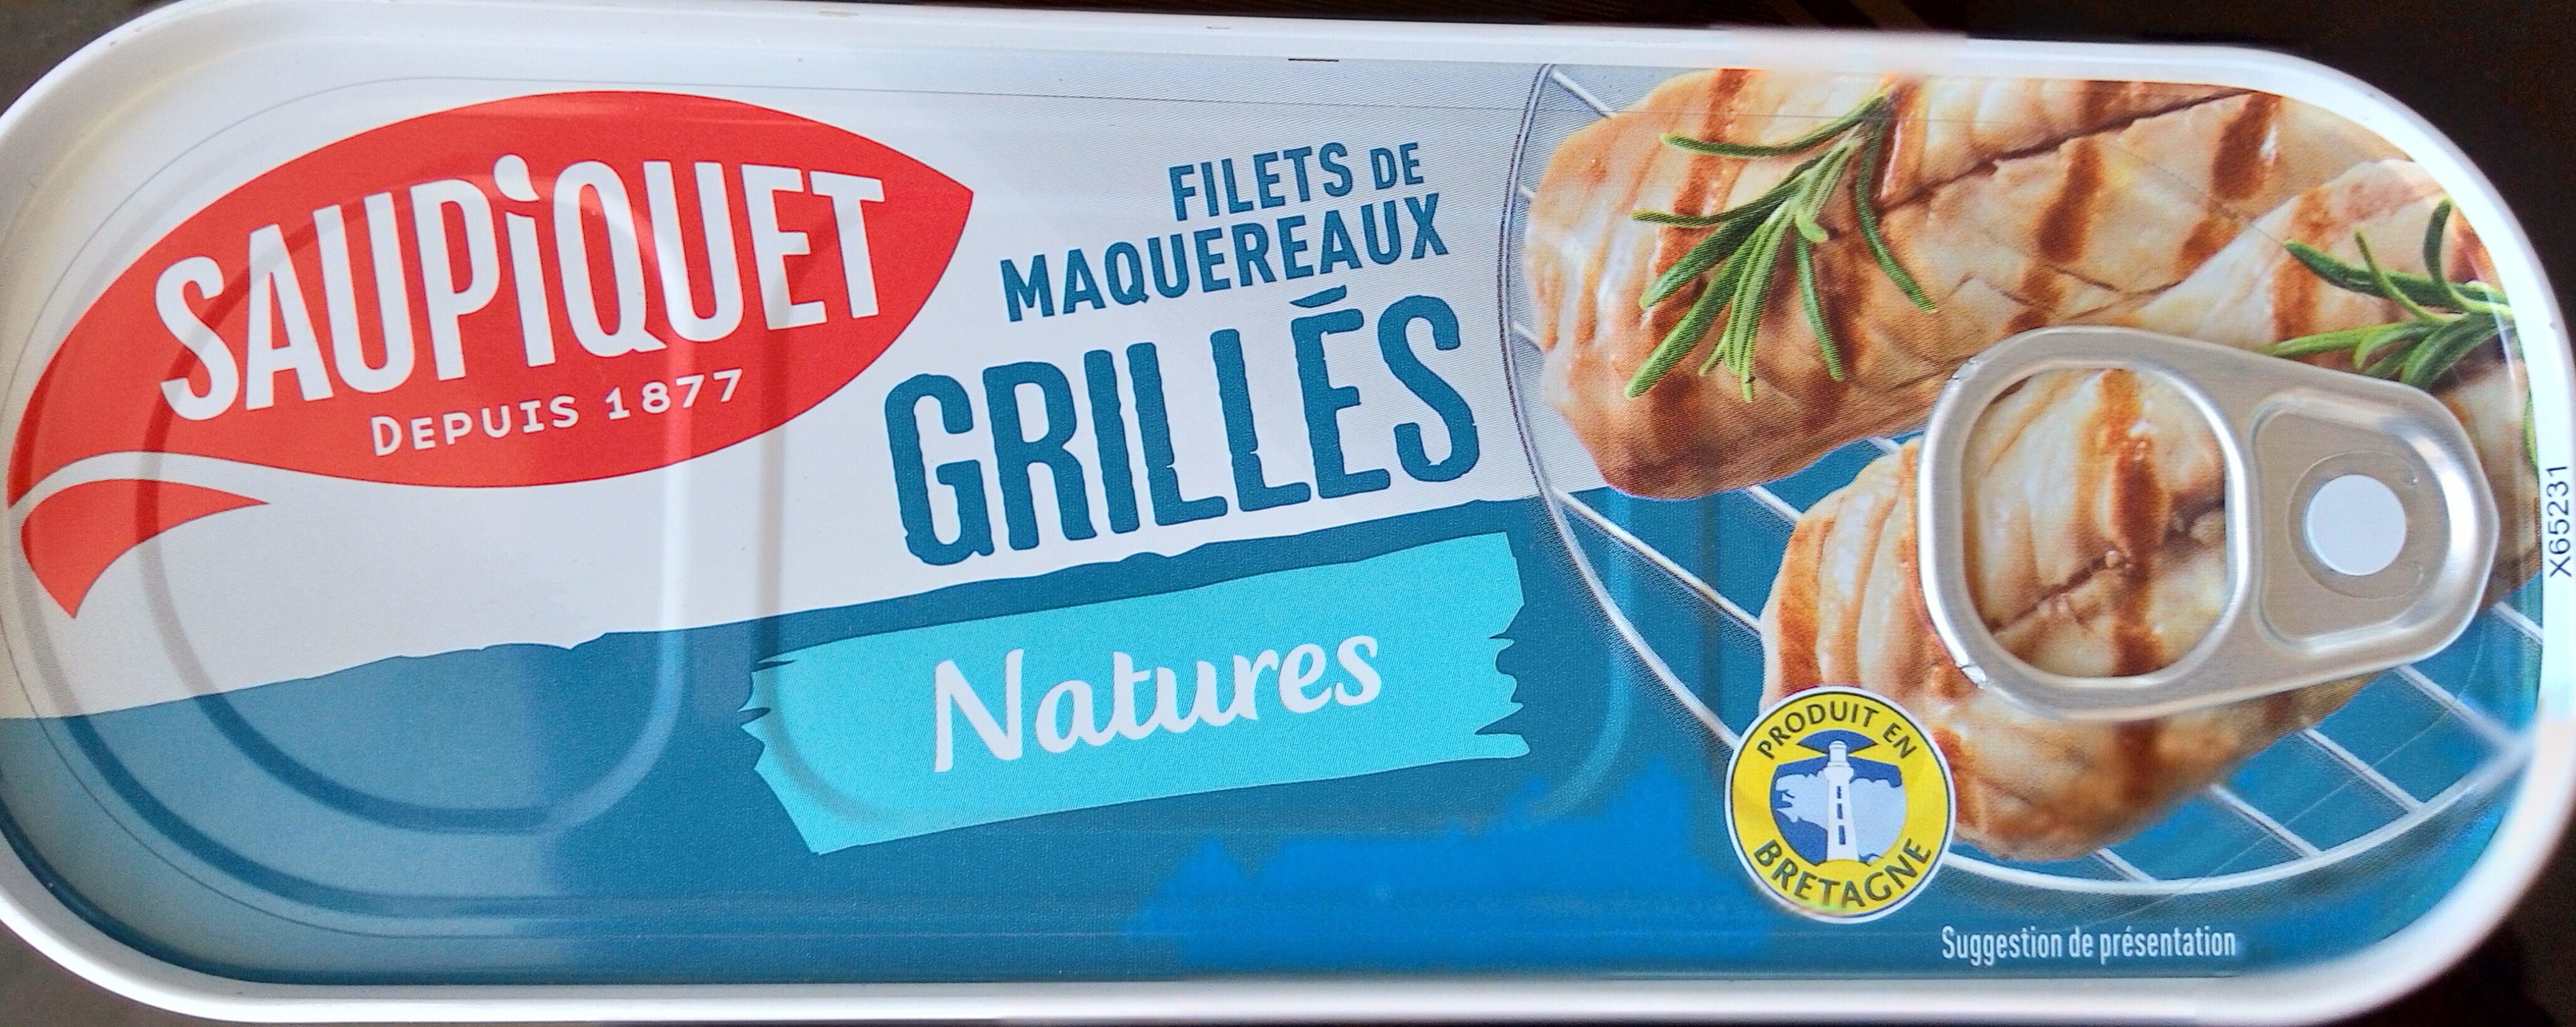 Filets de maquereaux  grillés nature - Produkt - fr